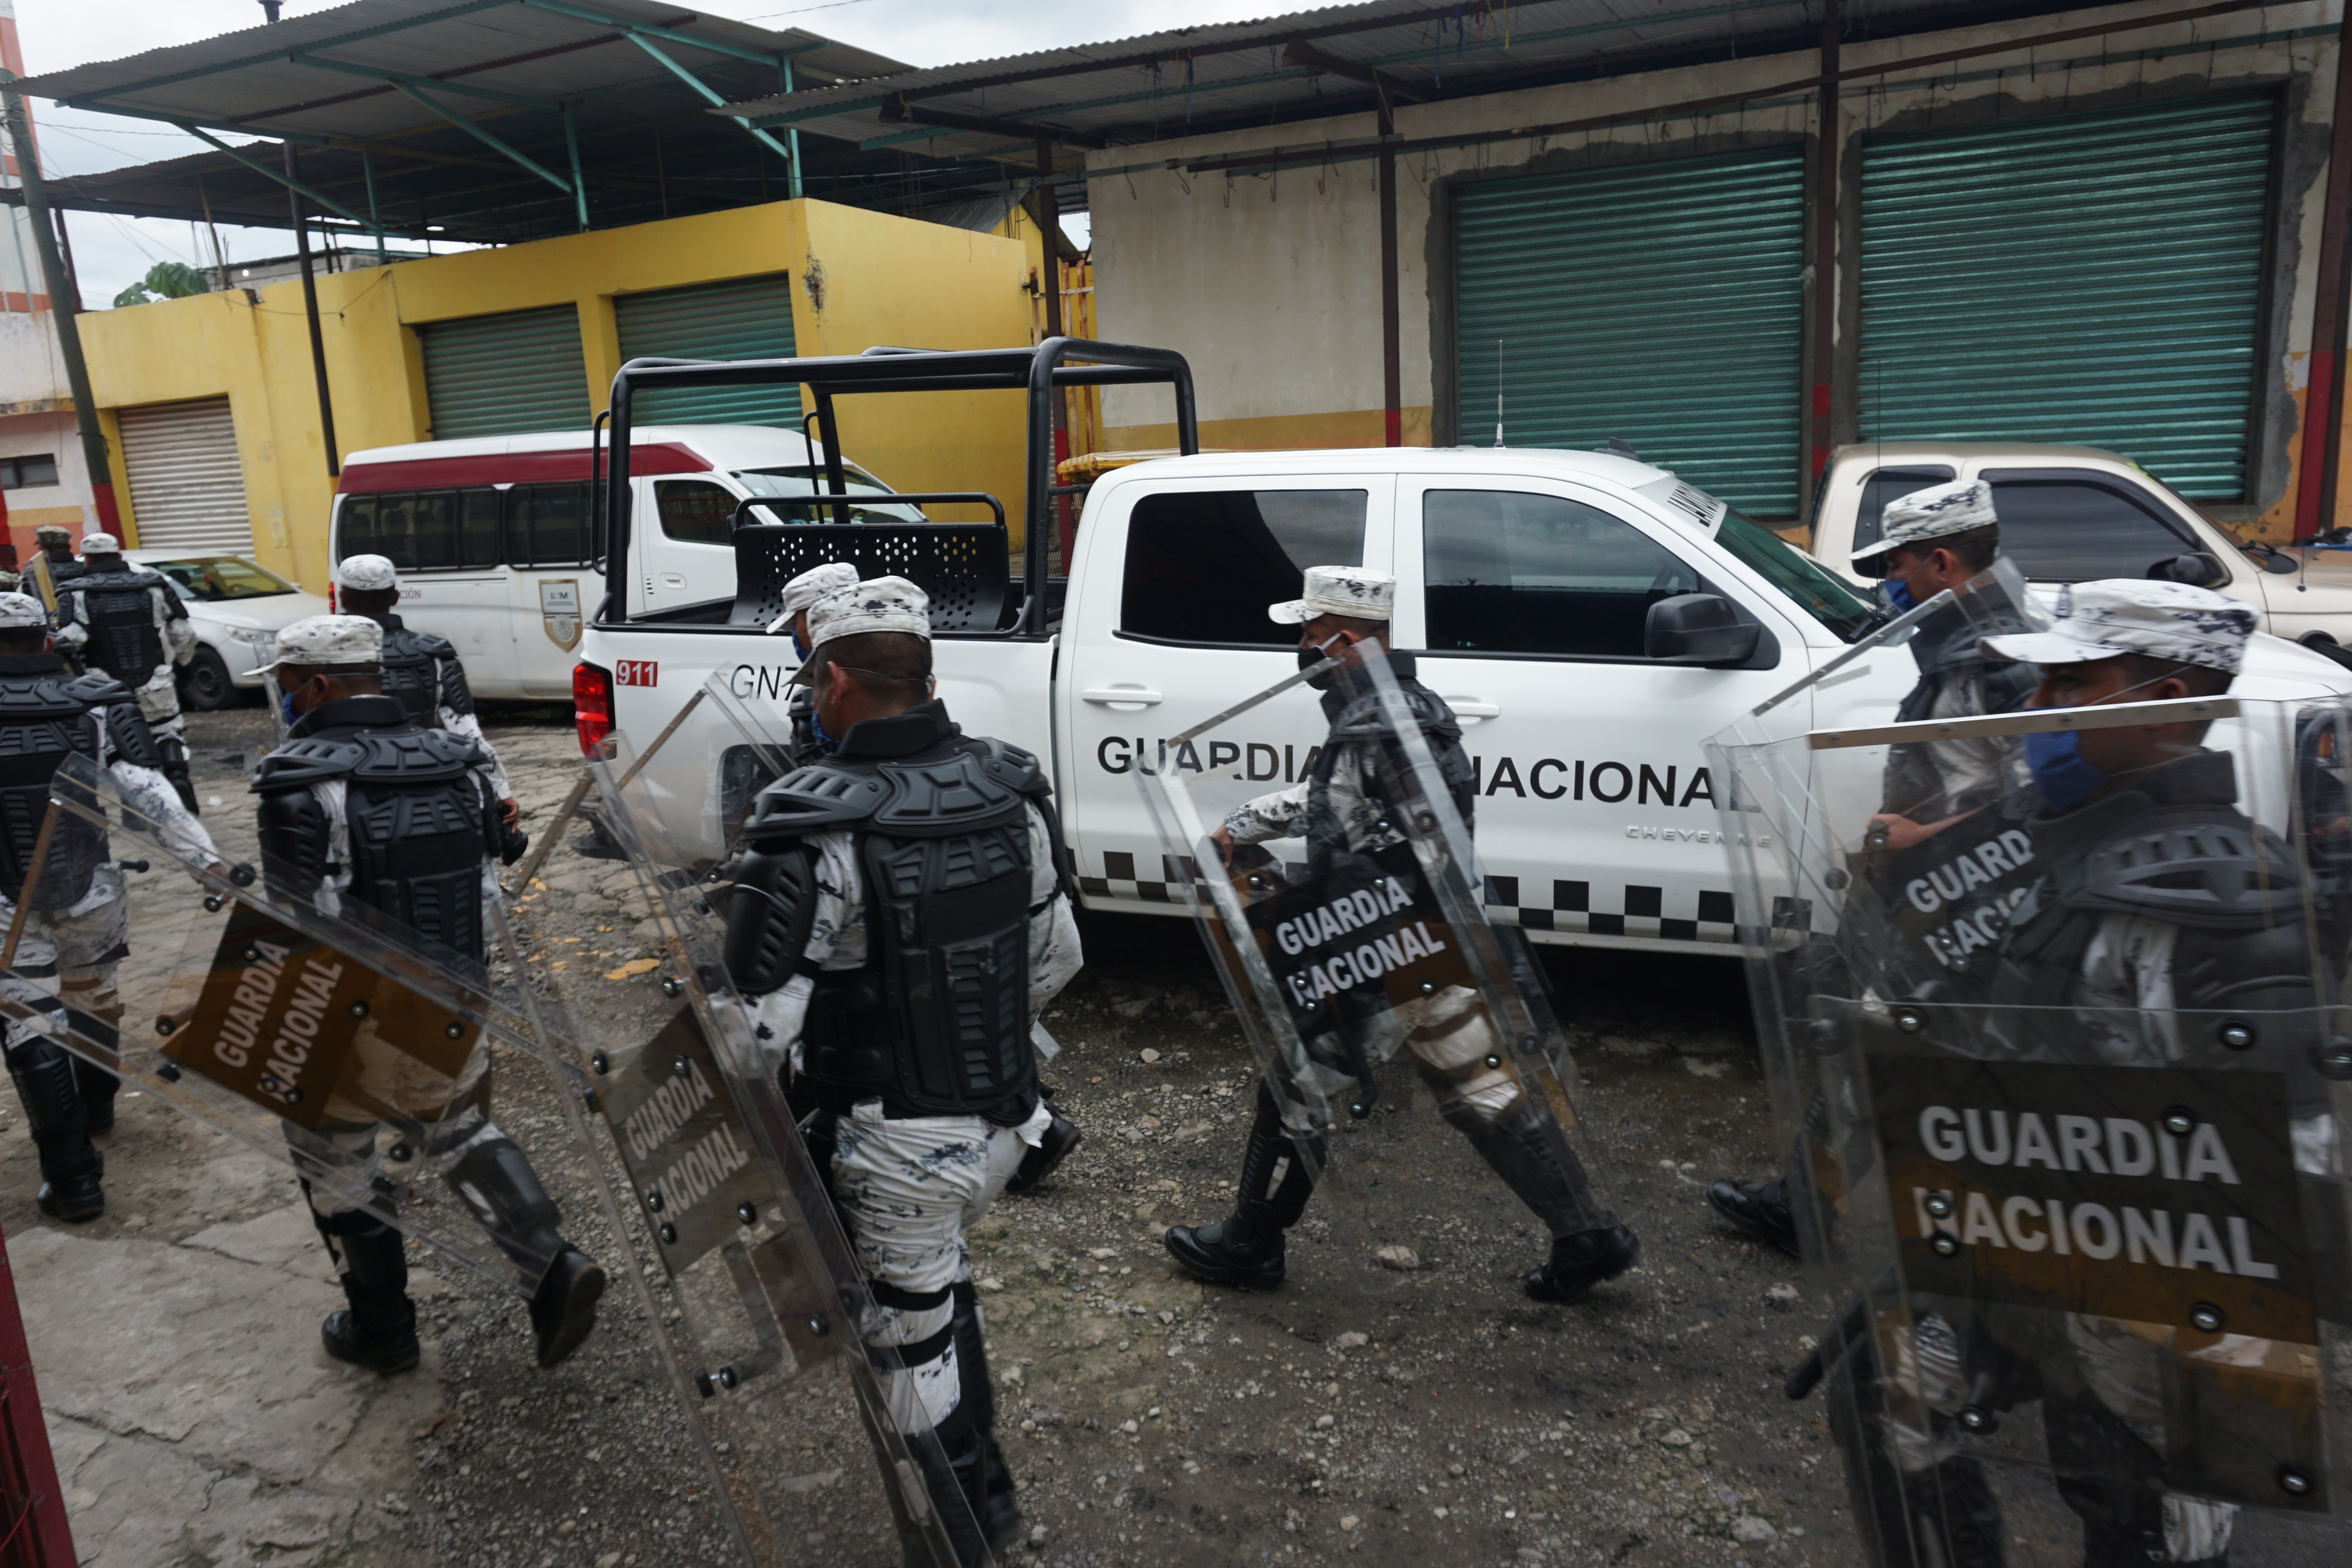 El consultor en seguridad dijo que la Guardia Nacional ha fracasado, pues no ha disminuido los índices de inseguridad (Foto: Juan Manuel Blanco/ EFE)
